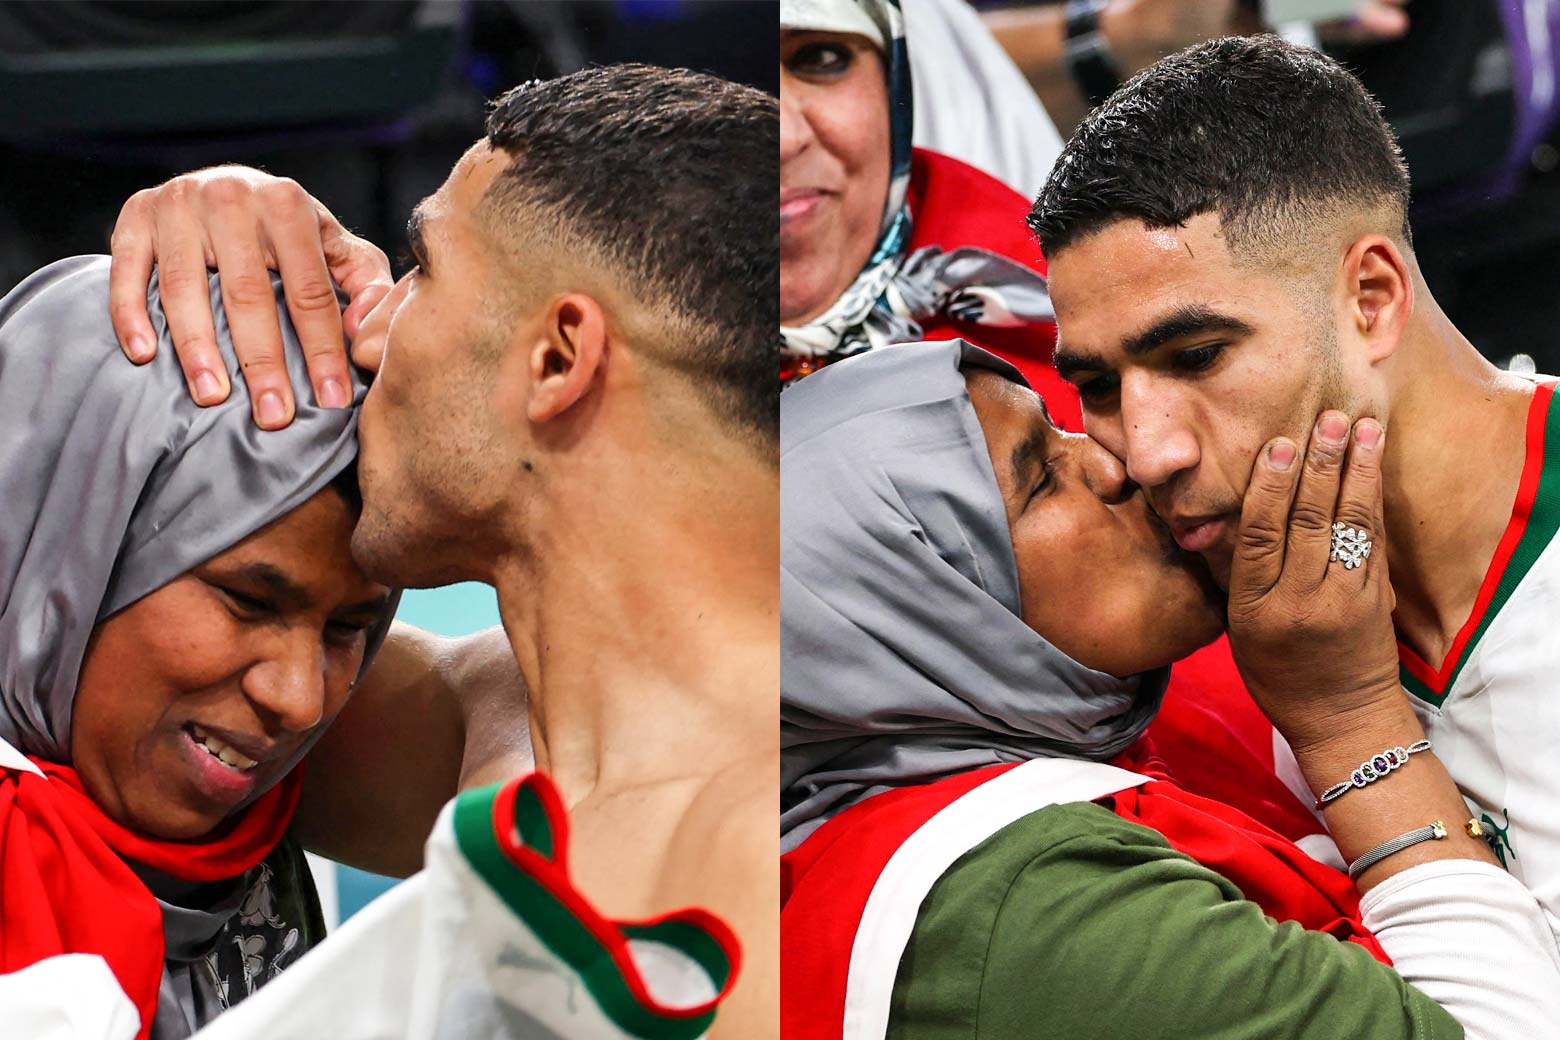 Un collage de deux images, de LR : Achraf Hakimi embrasse le front de sa mère et prend sa tête avec sa main.  La mère d'Achraf Hakimi tient son visage et l'embrasse sur la joue.